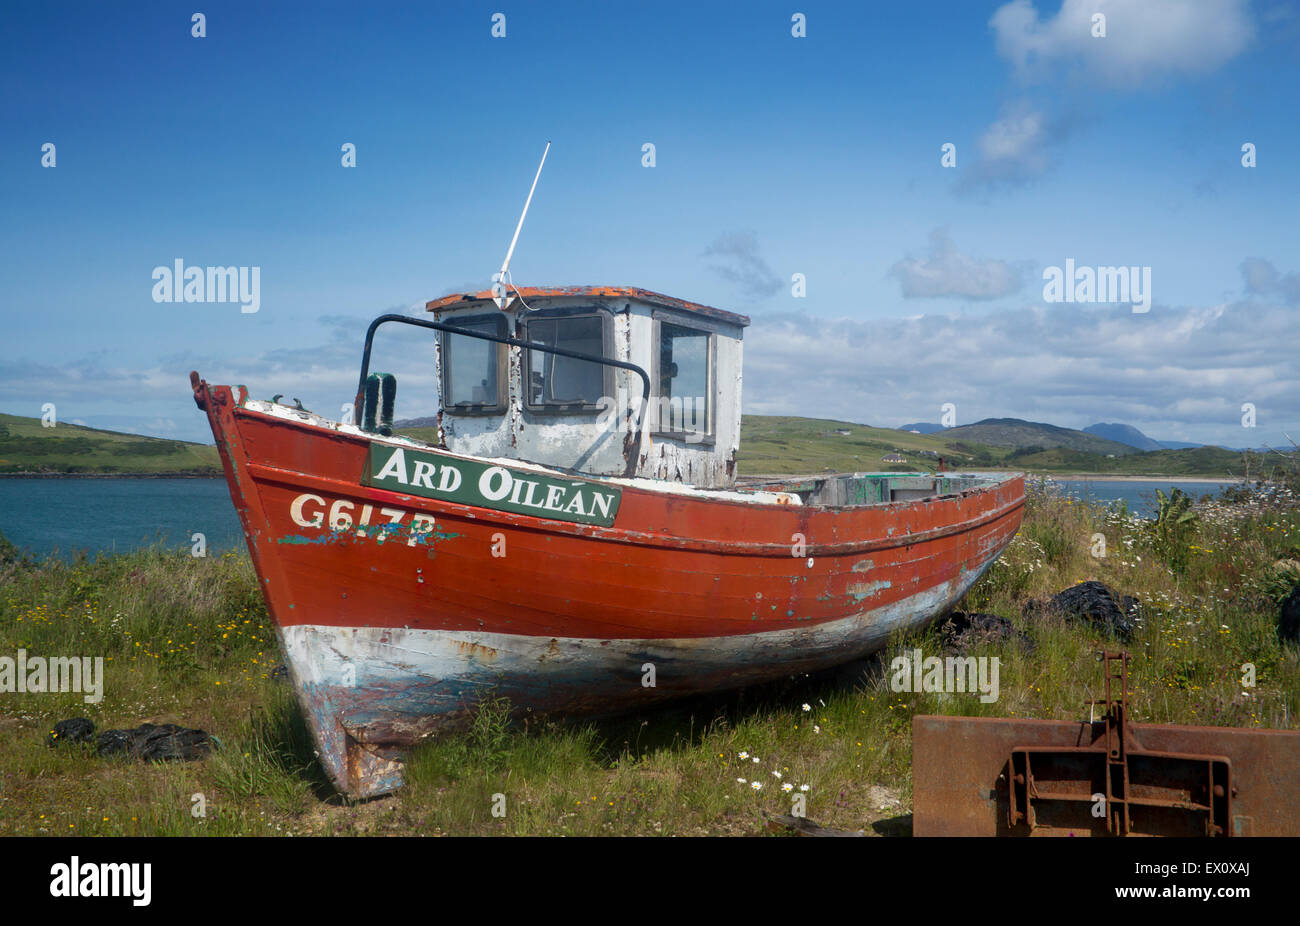 Ancien bateau de pêche à terre rouge avec en arrière-plan les montagnes Twelve Bens Cleggan Connemara Comté de Galway Irlande République d'Irlande Banque D'Images